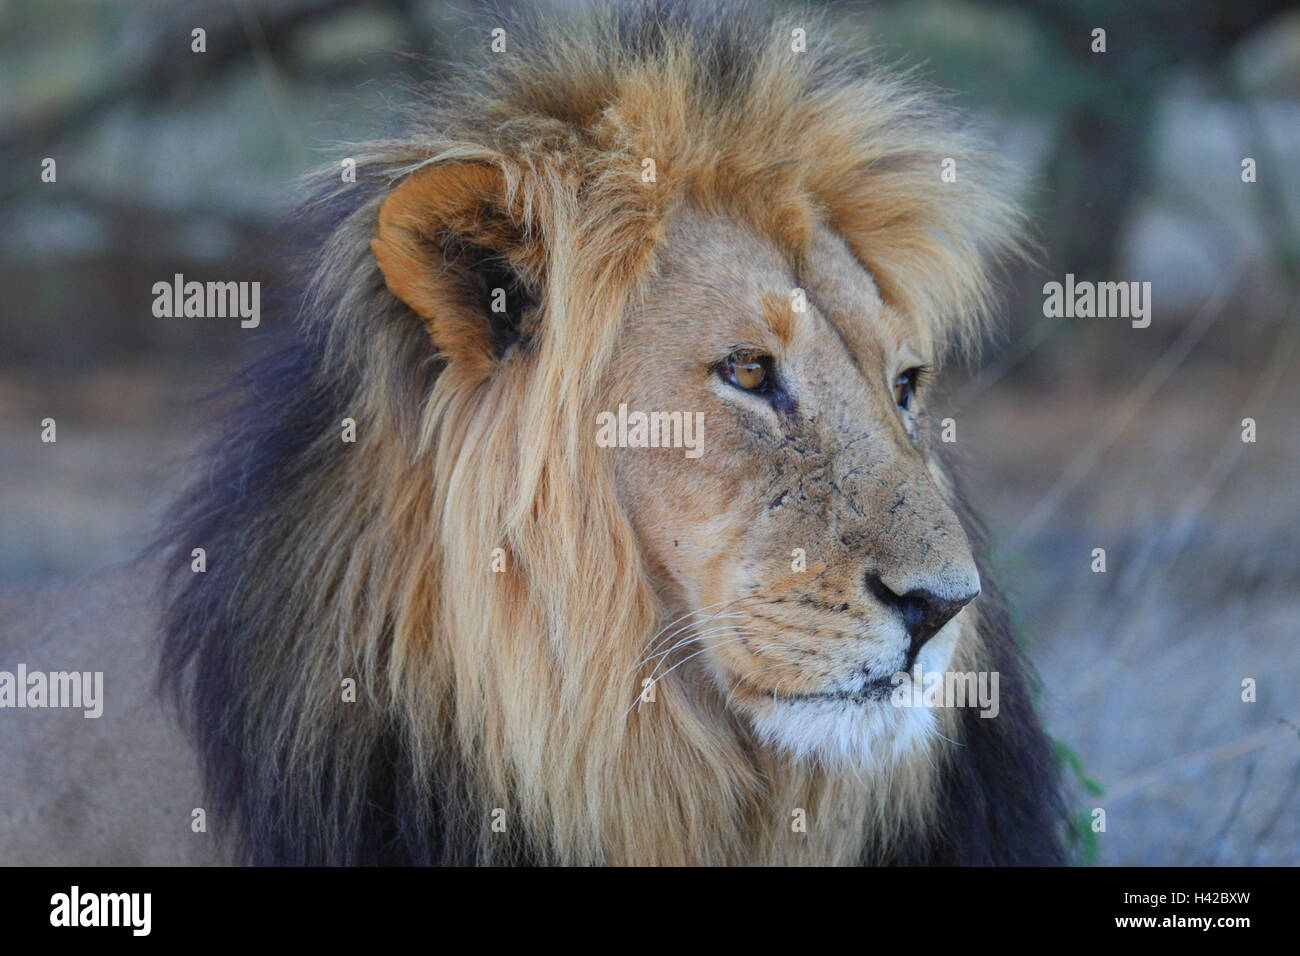 Lion piccolo uomo, Lion, ritratto, Foto Stock